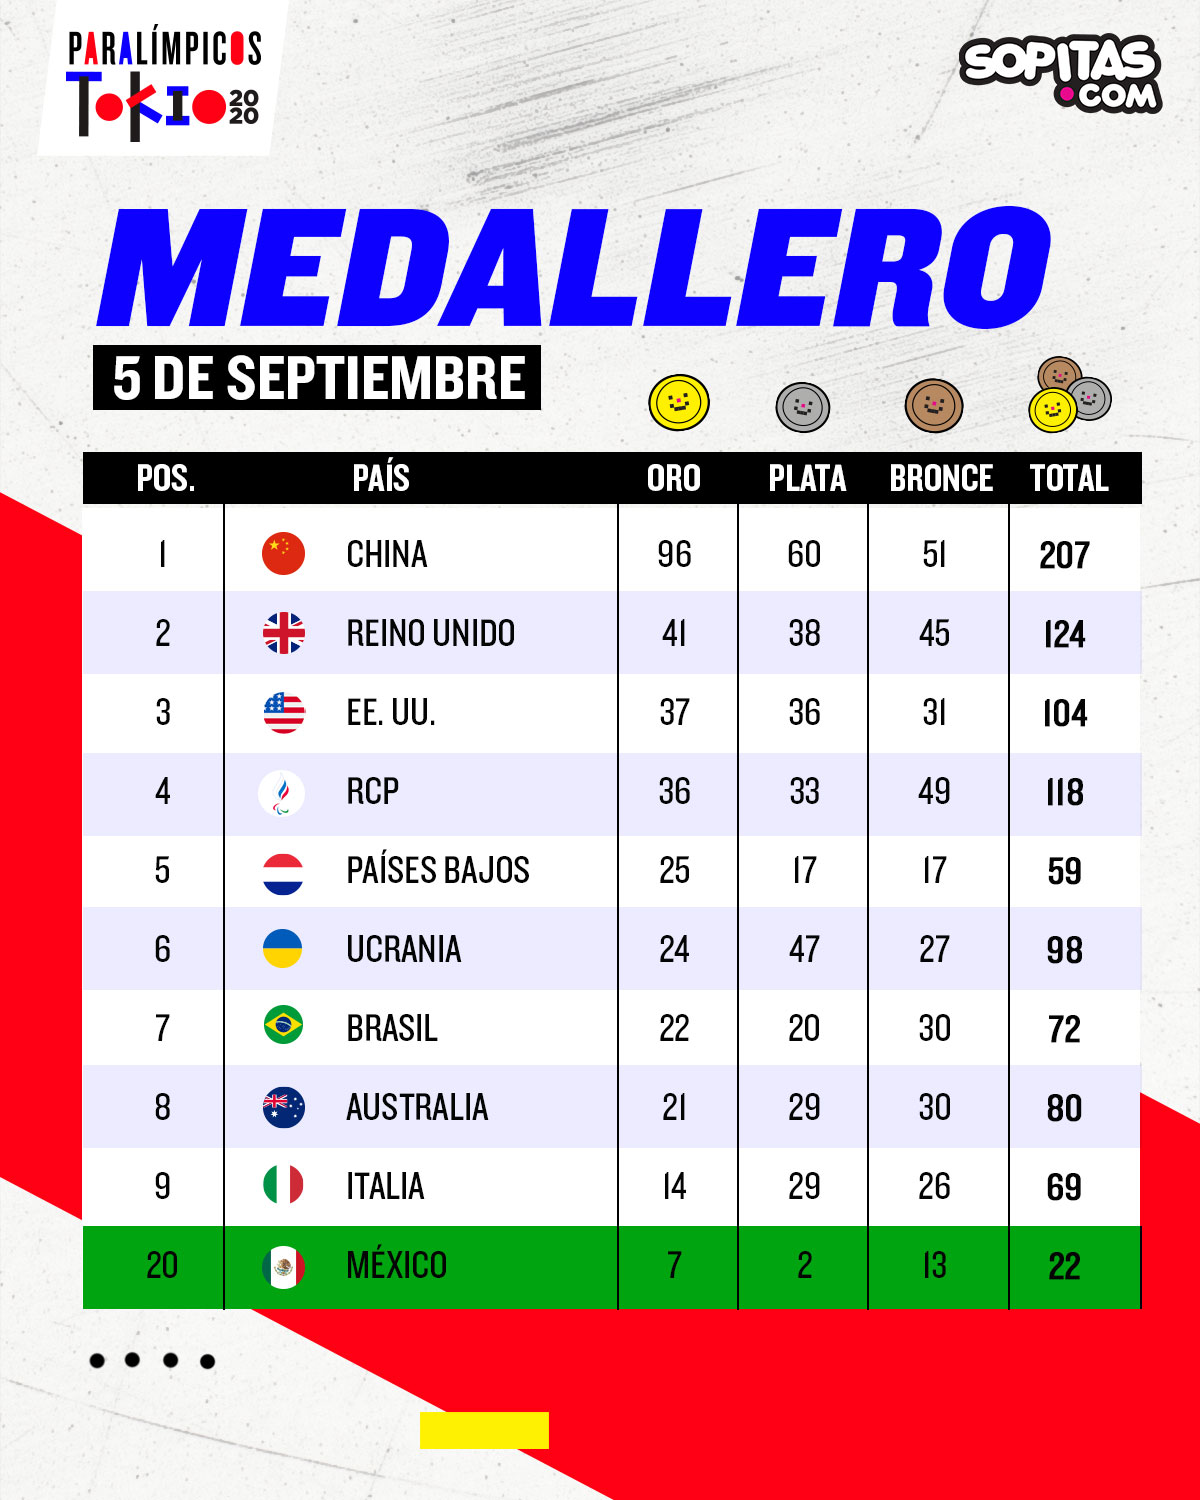 Doble centenario y producción de medallas histórica: Lo que dejaron los Juegos Paralímpicos de Tokio 2020 para México